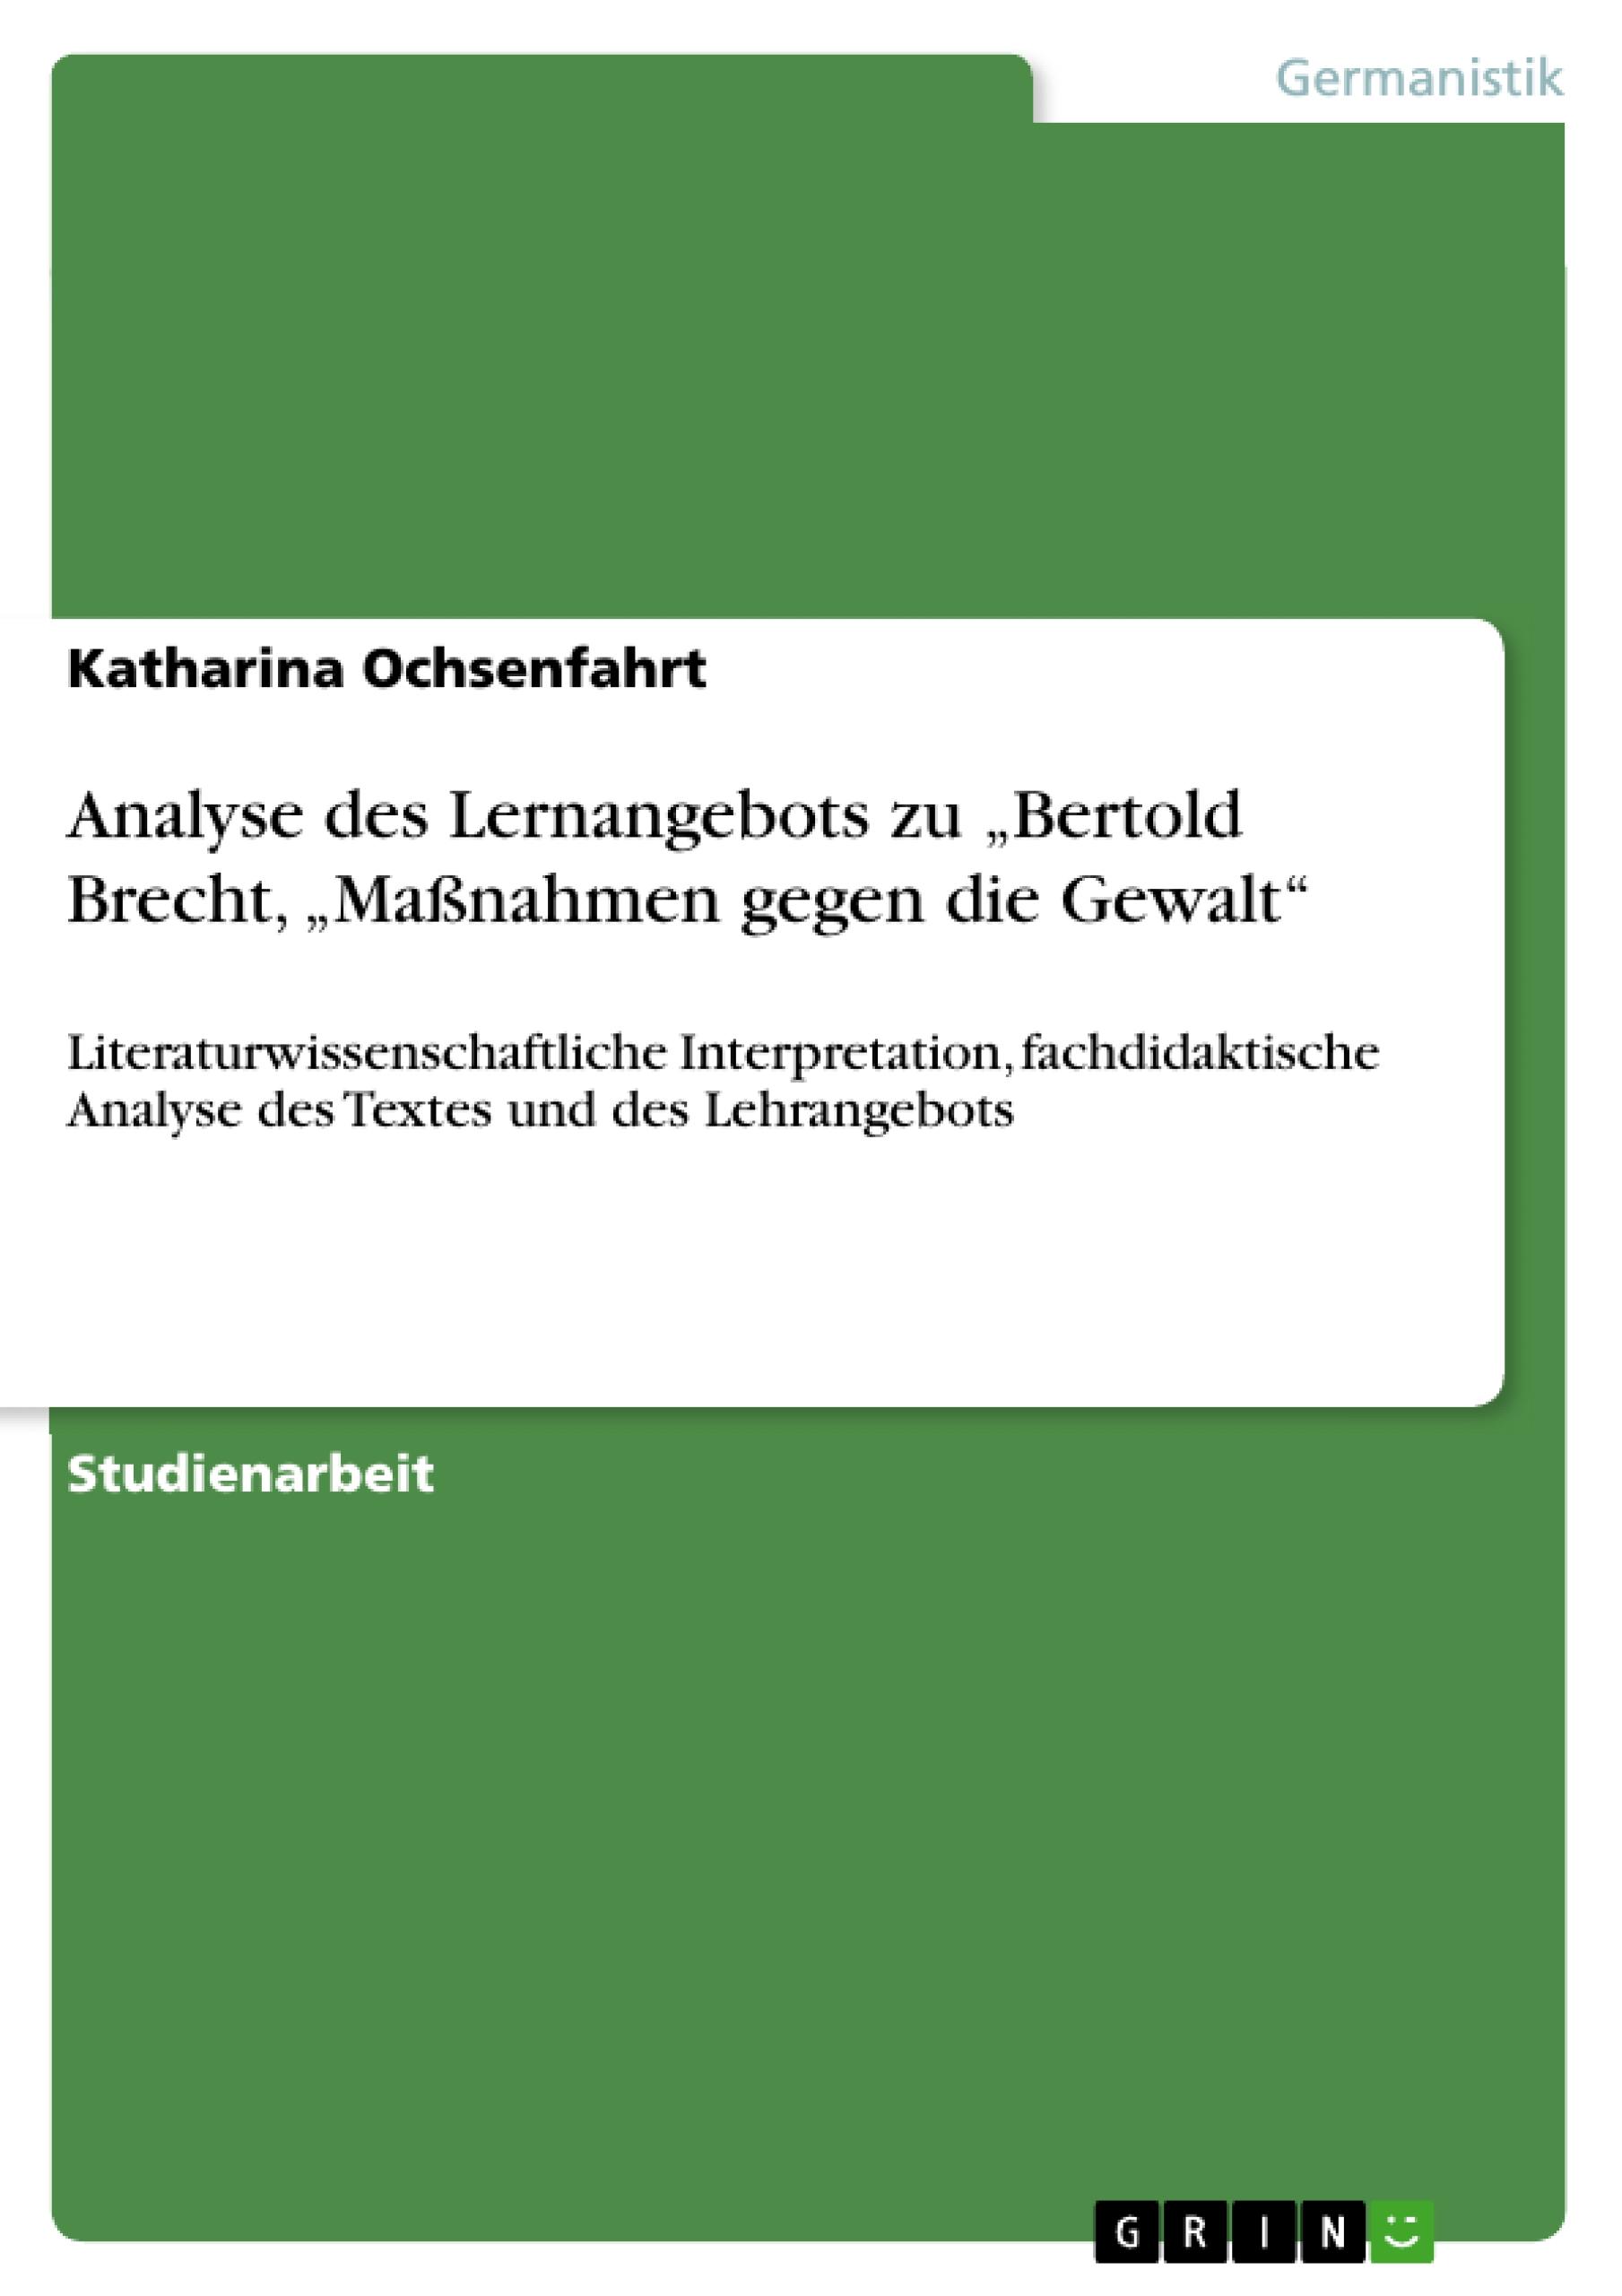 Analyse des Lernangebots zu  Bertold Brecht,  Massnahmen gegen die Gewalt - Ochsenfahrt, Katharina